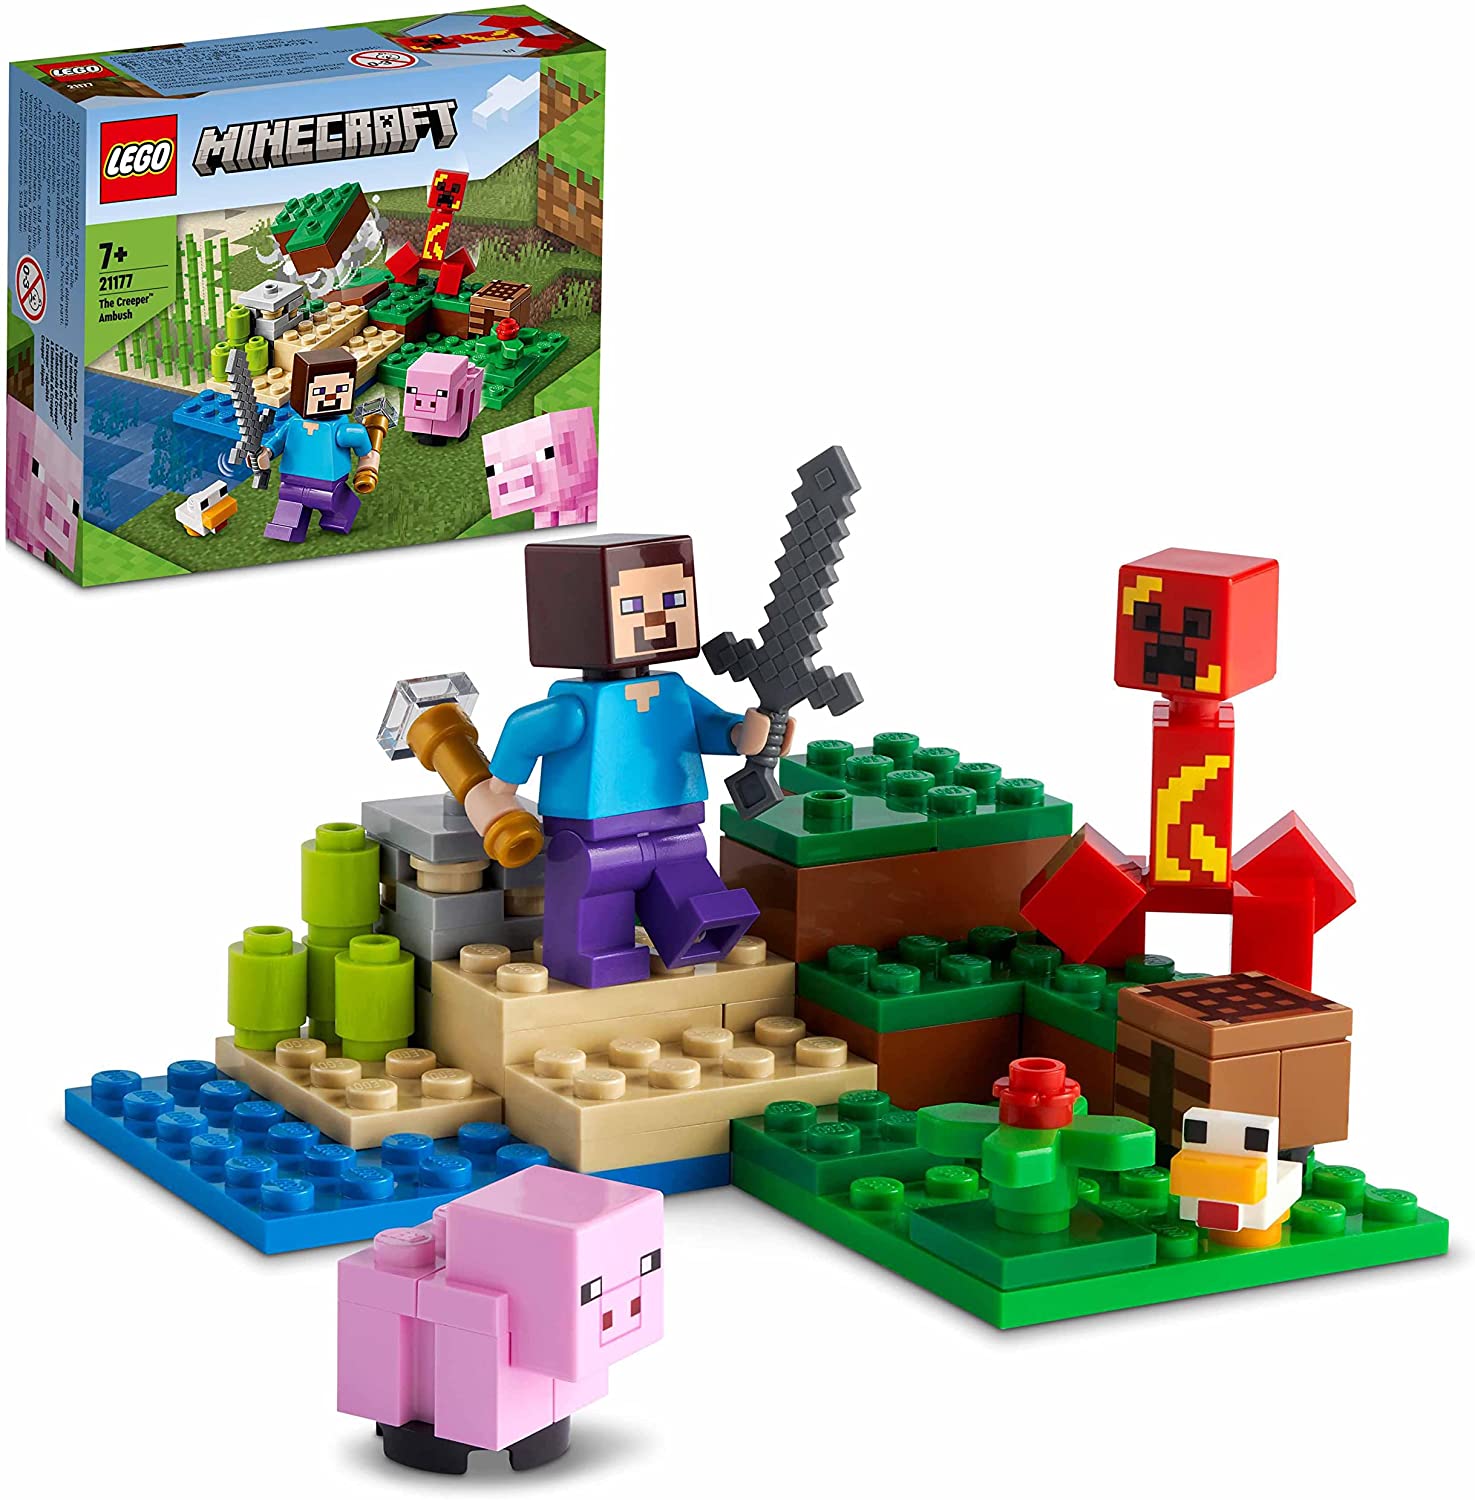 LEGO 21177 Minecraft Der Hinterhalt des Creeper, Spielzeugset mit Steve, Sc